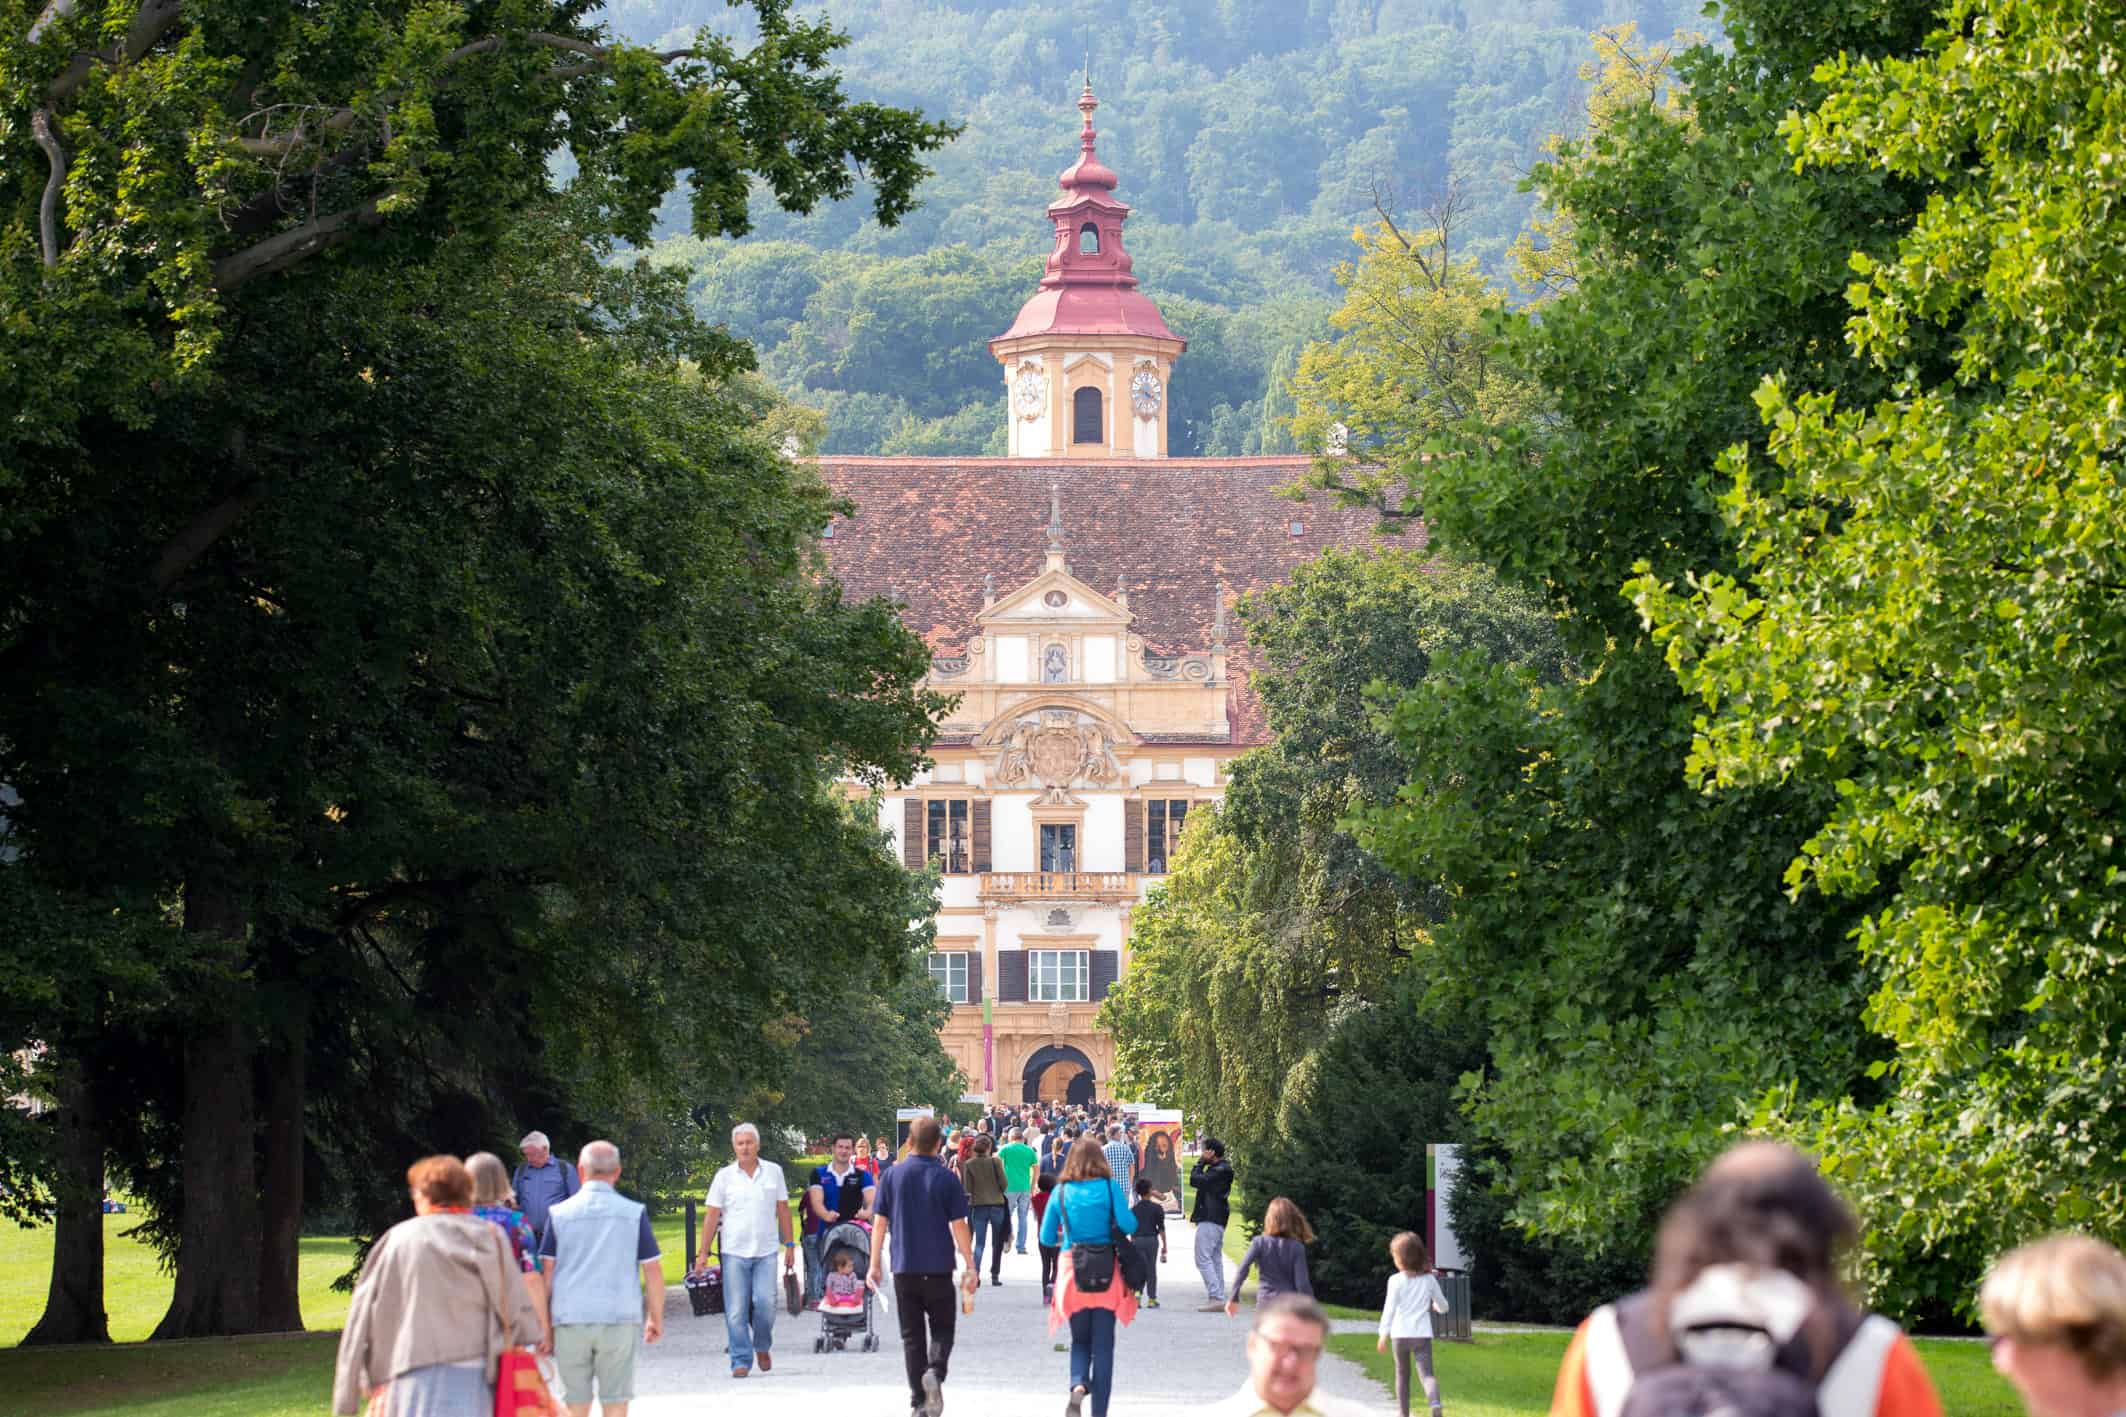 Schloss Eggenberg in Graz - Sehenswürdigkeiten in der Steiermark auf 365Austria